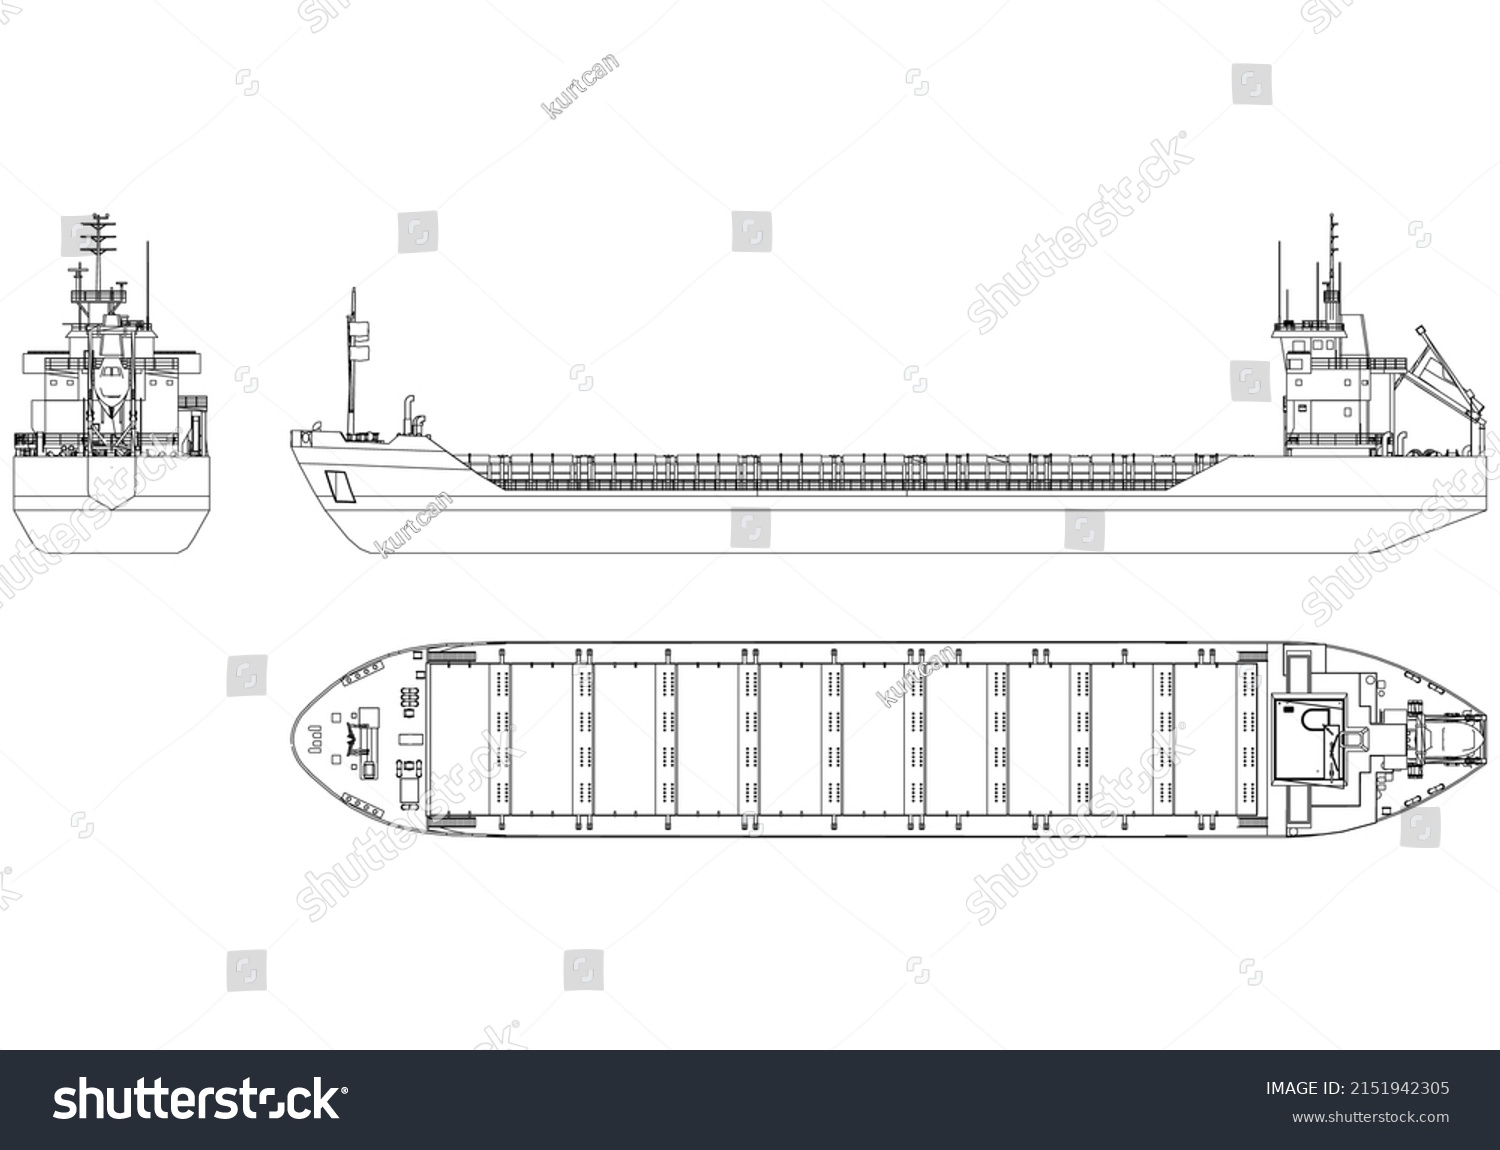 SVG of Container ship, cargo ship. World cargo ship. Design elements for logo, label, emblem, sign, brand mark. Vector illustration. svg